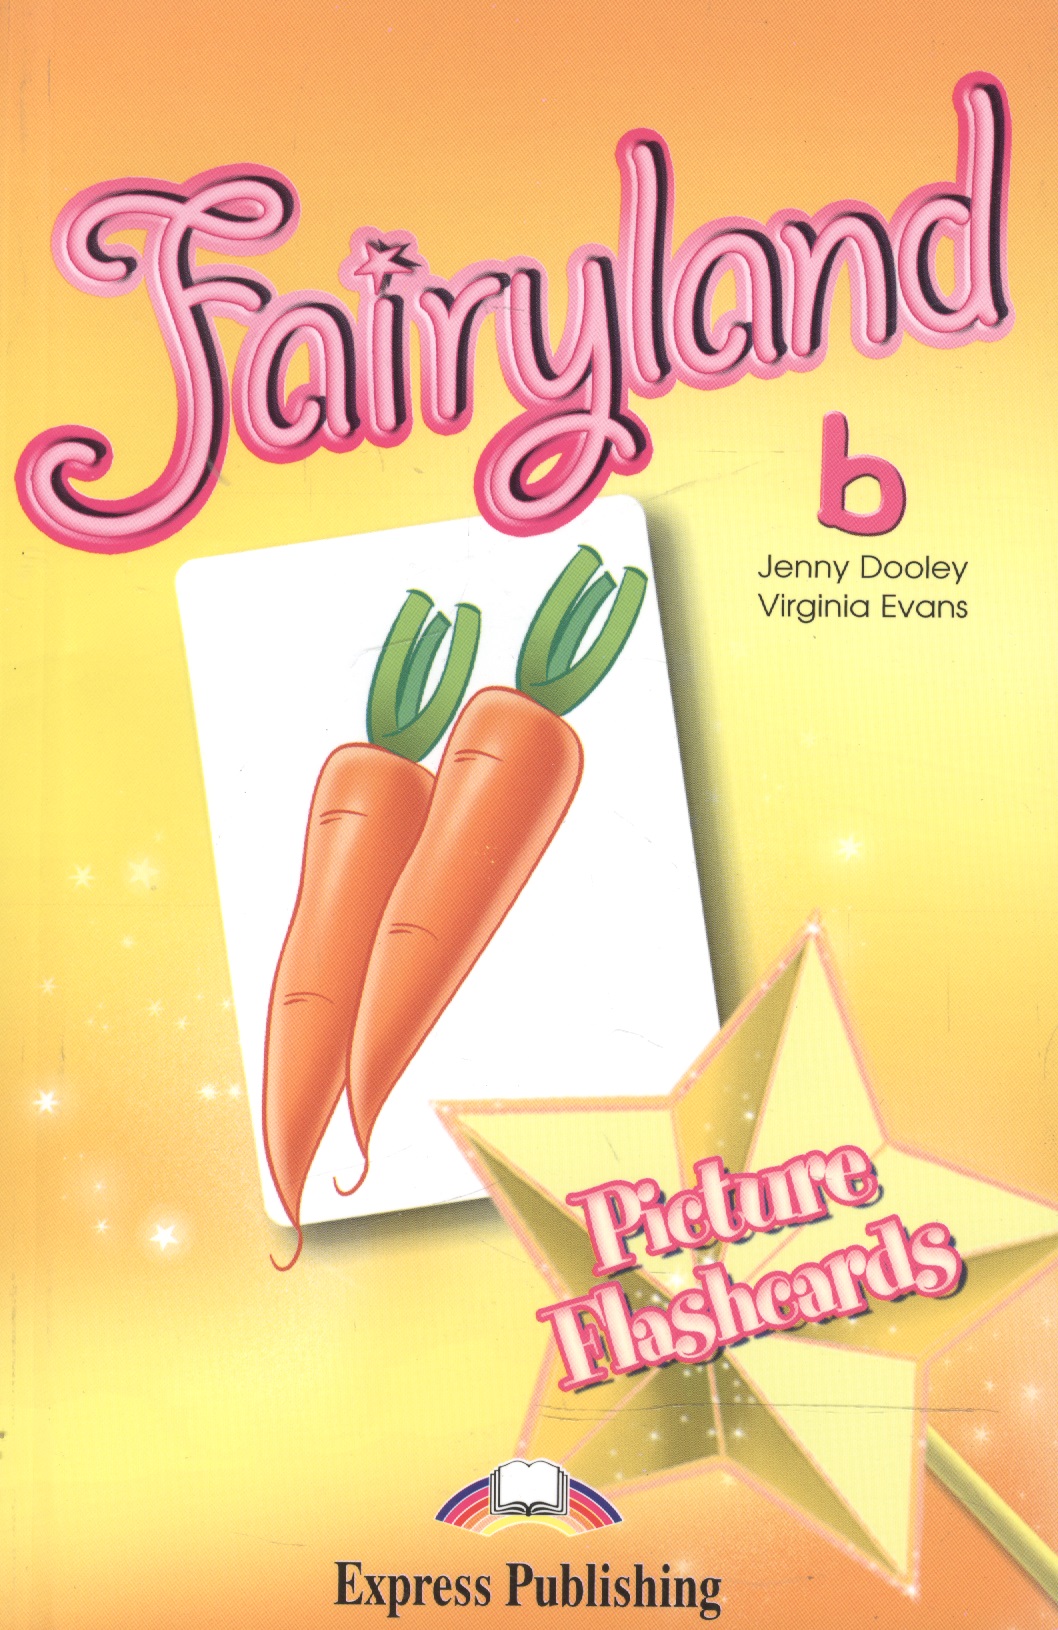 Эванс Вирджиния Fairyland 2. Picture Flashcards. Beginner. Раздаточный материал эванс вирджиния fairyland 6 vocabulary